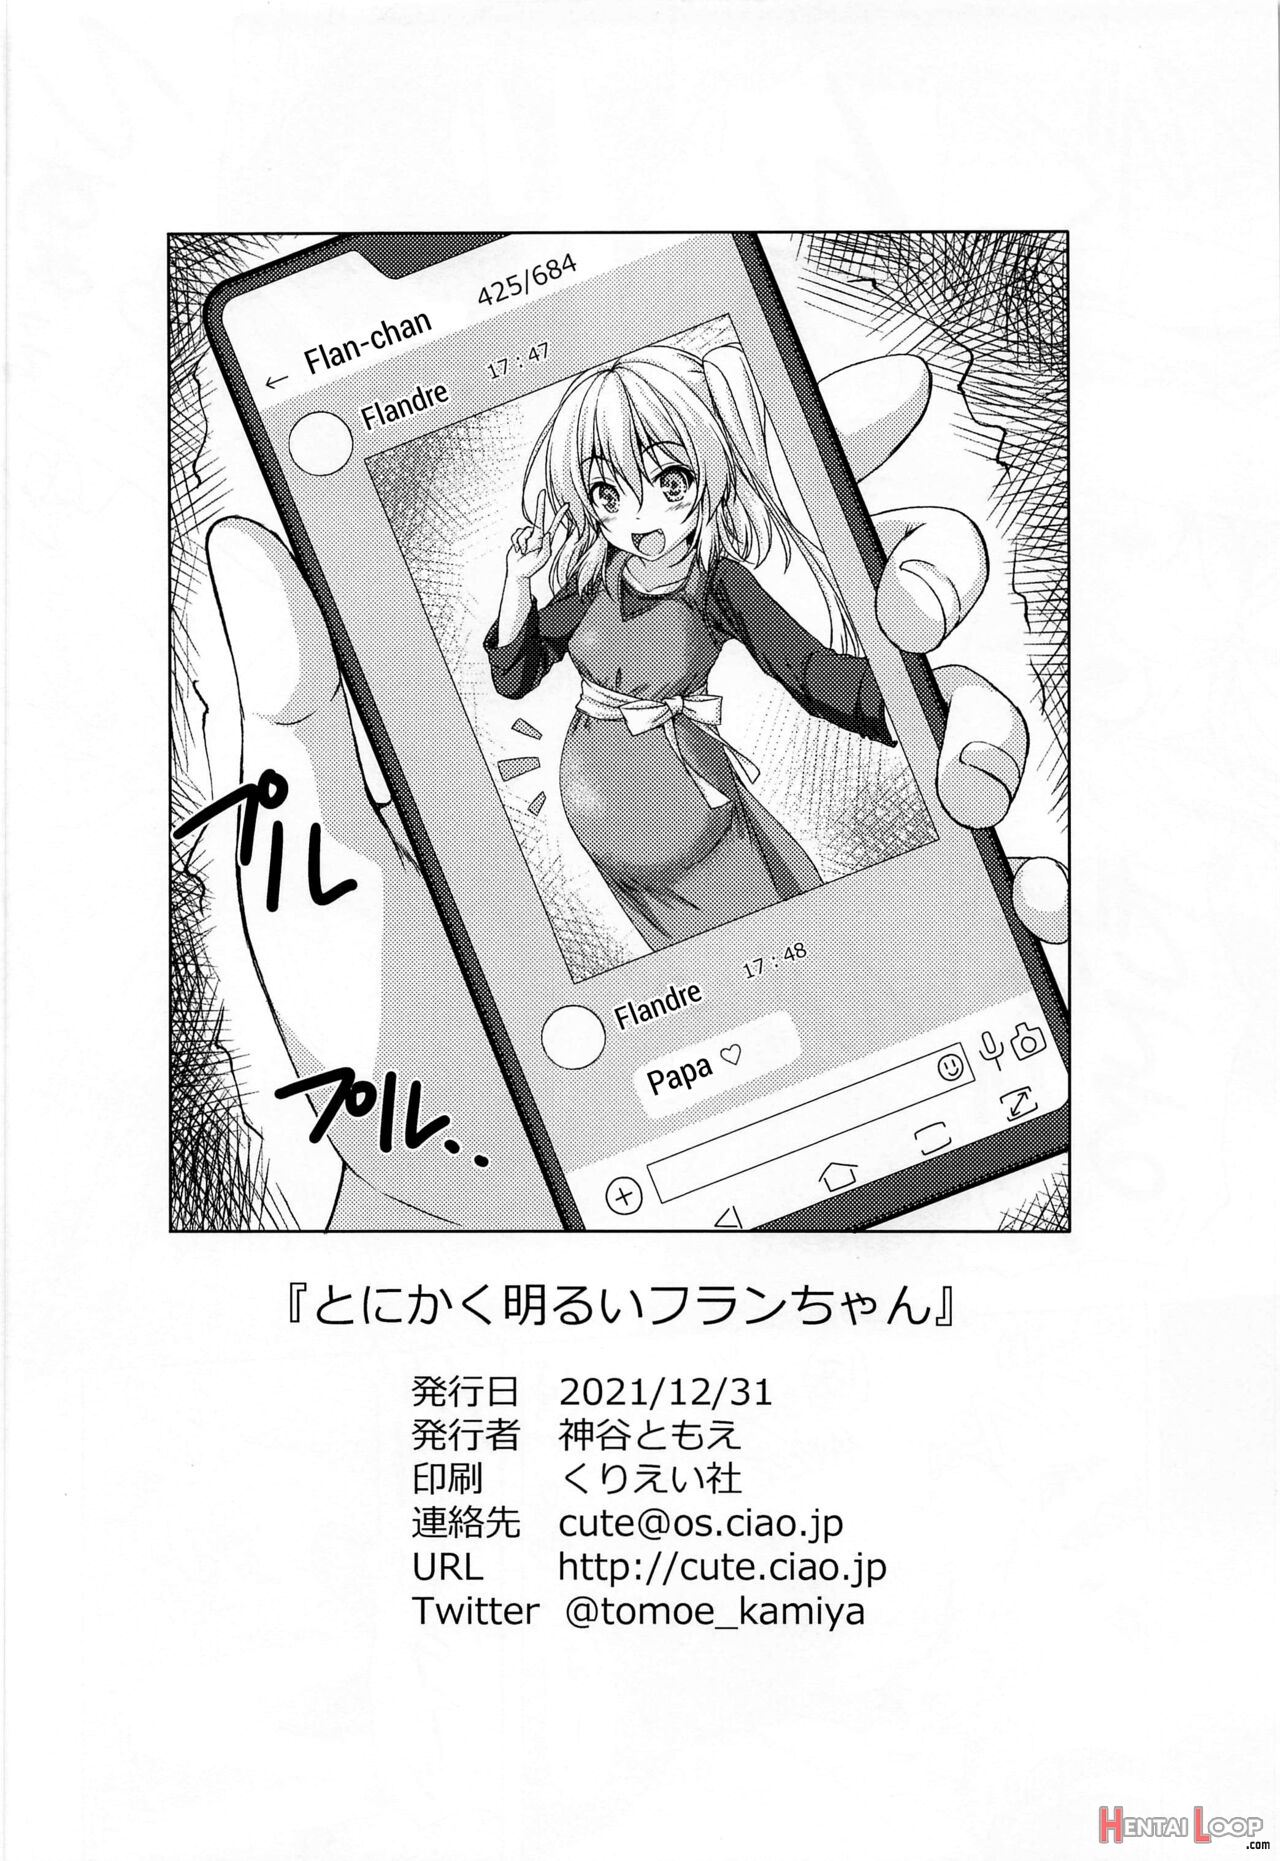 Tonikaku Akarui Flan-chan page 17